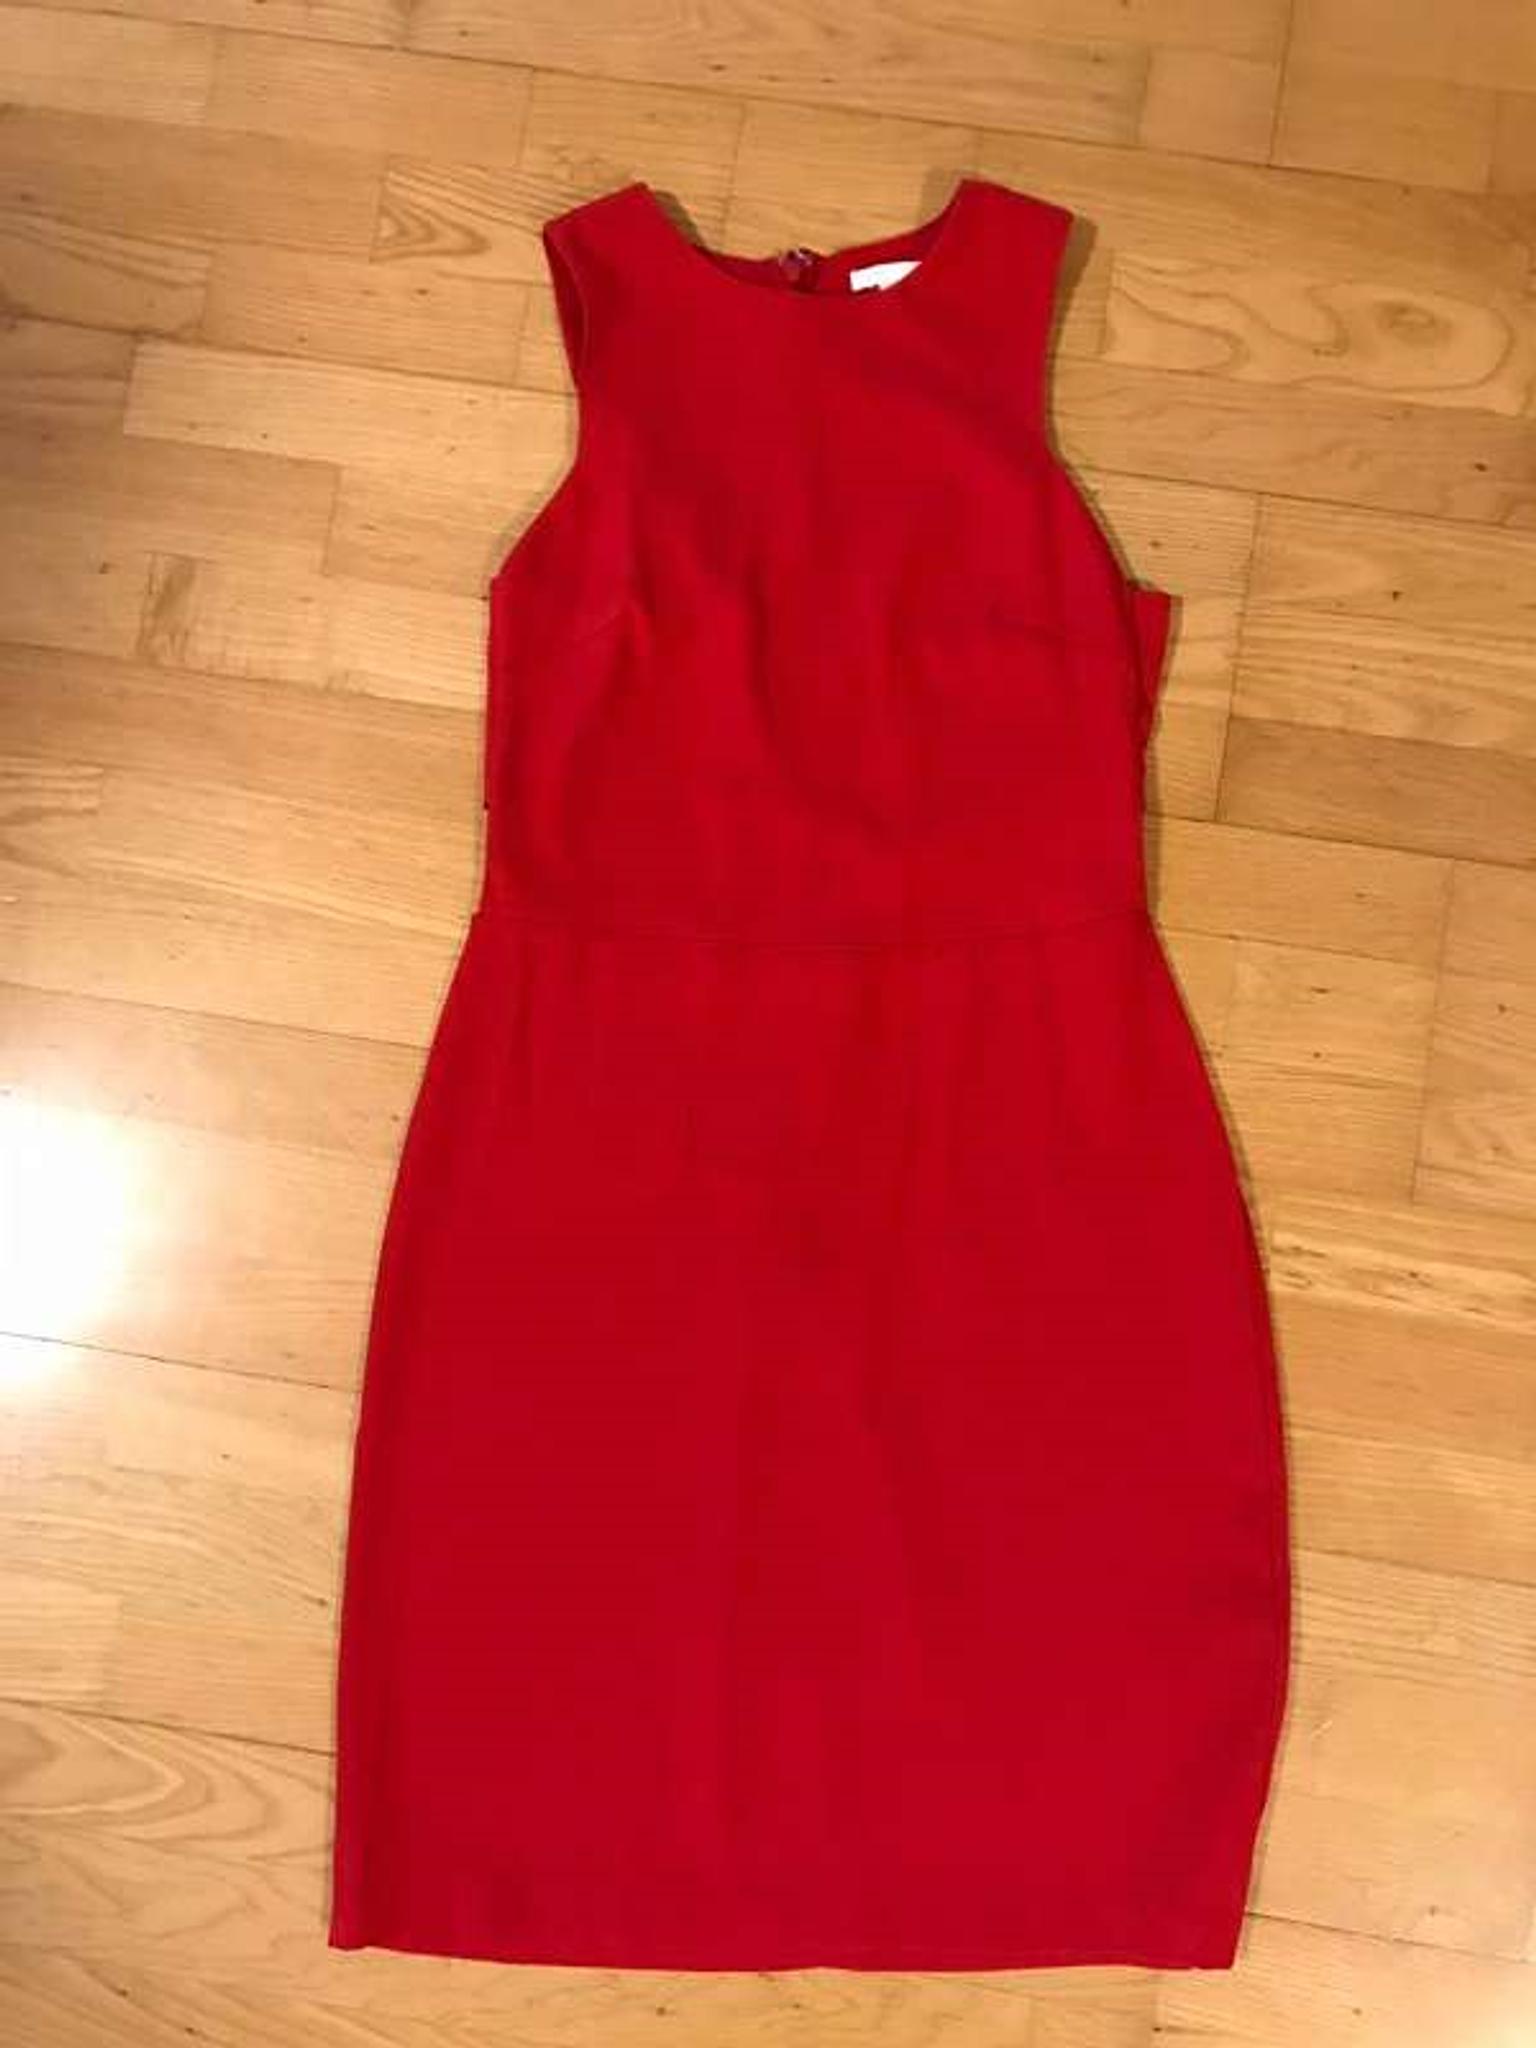 Midi Kleid In 3100 Gemeinde St Polten Fur 7 00 Zum Verkauf Shpock At